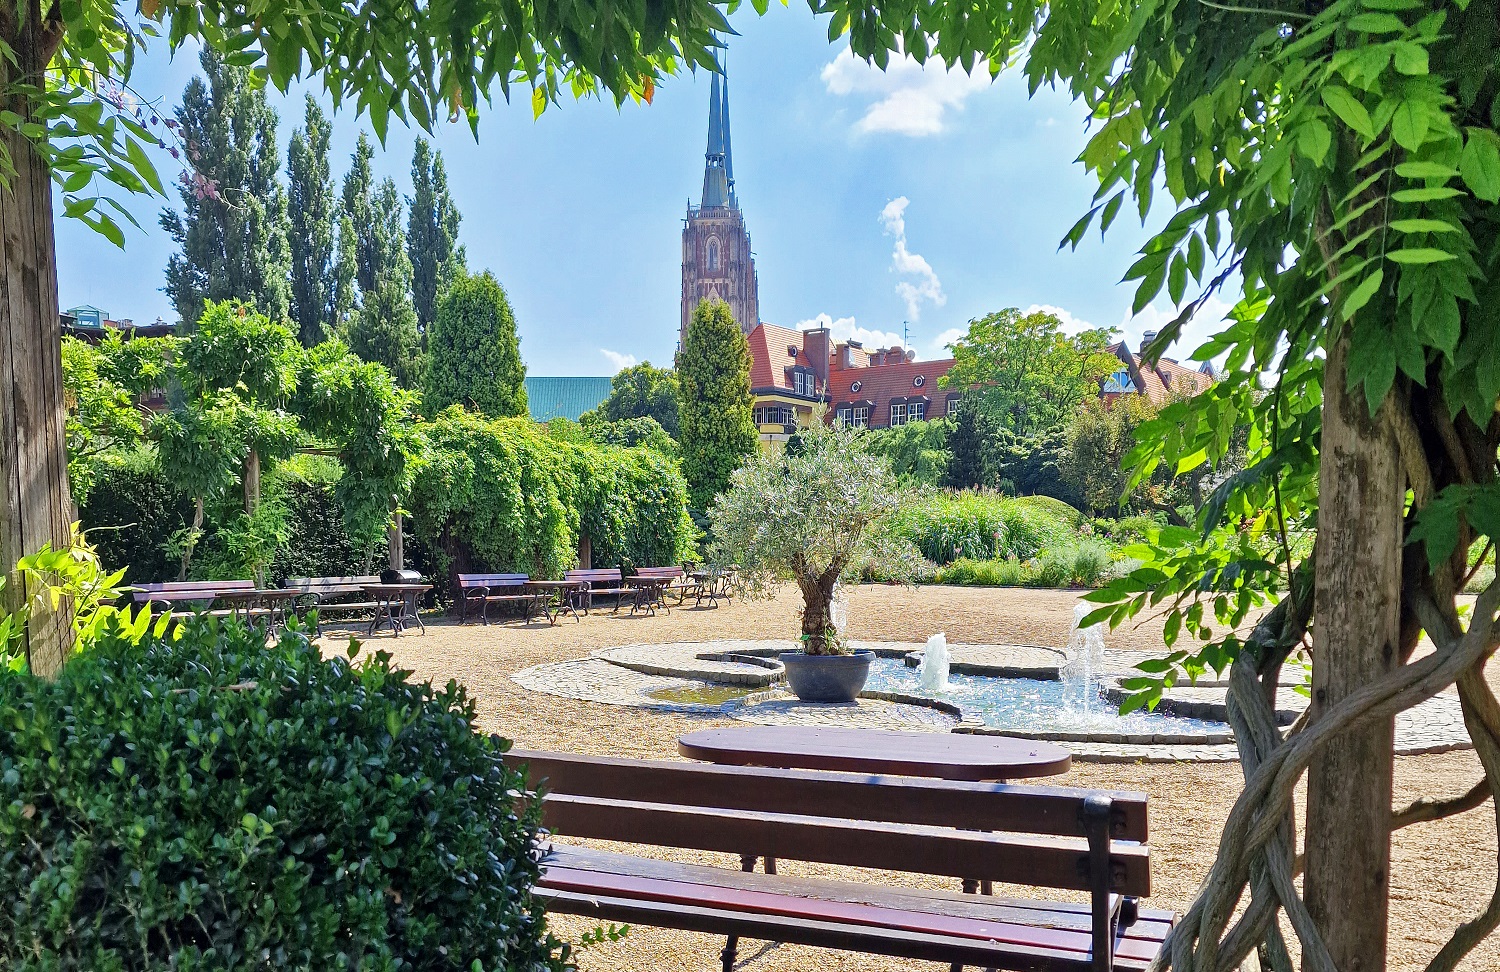 Ogród Botaniczny Wrocław